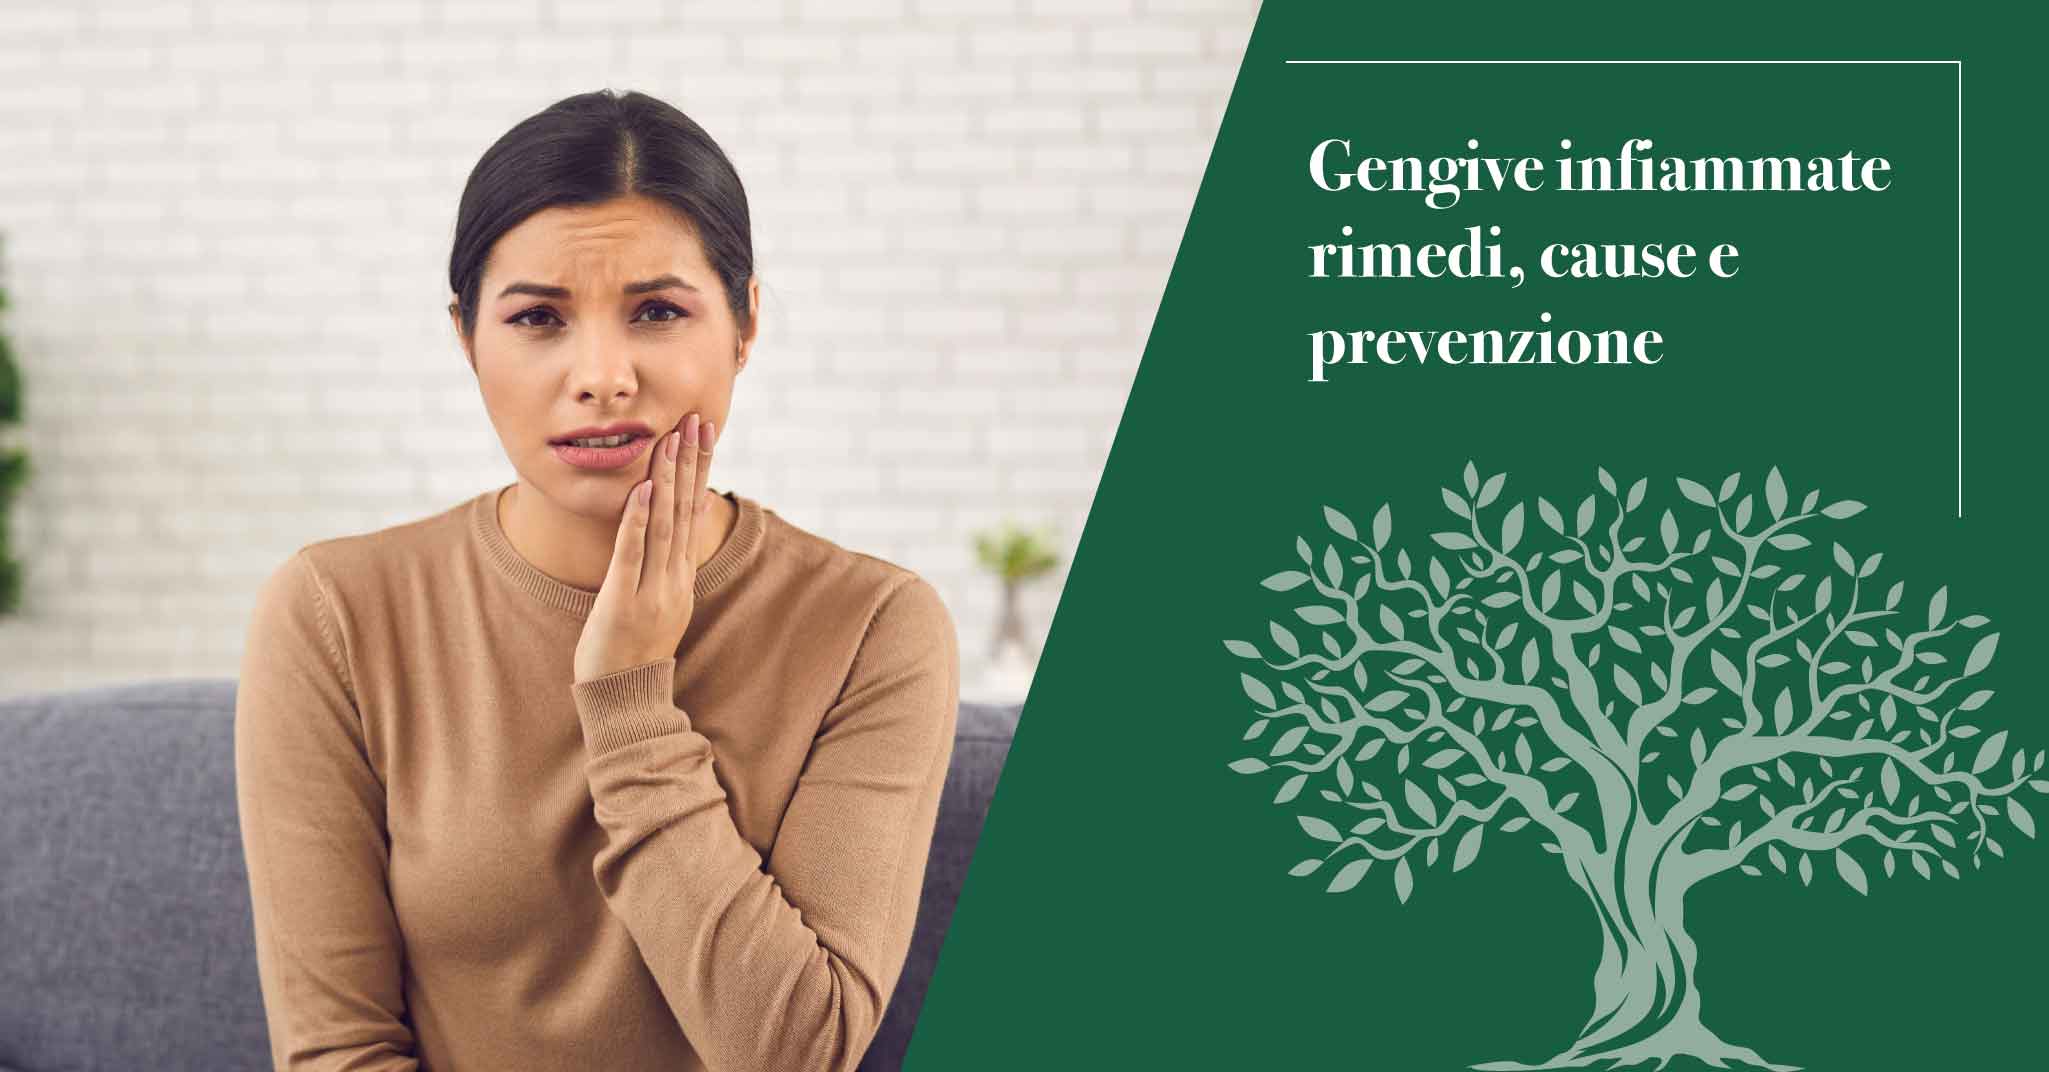 gengive infiammate | Studi Mezzena